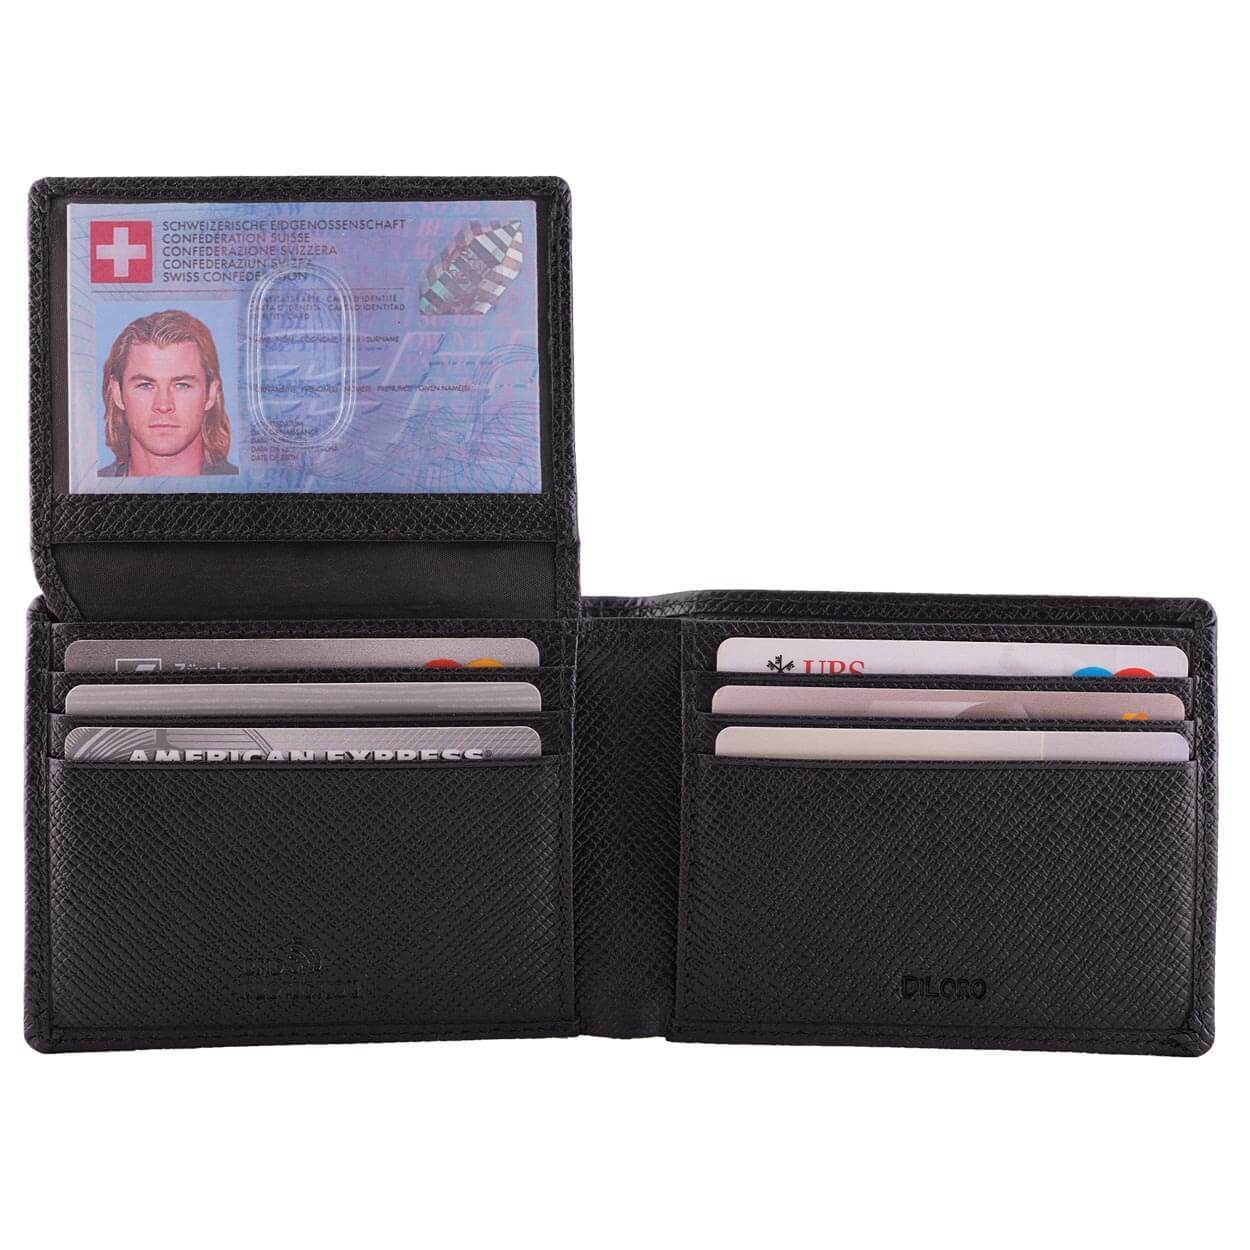 DiLoro Men's Slim Bifold Leather Wallet 2 ID Windows Firenze Black